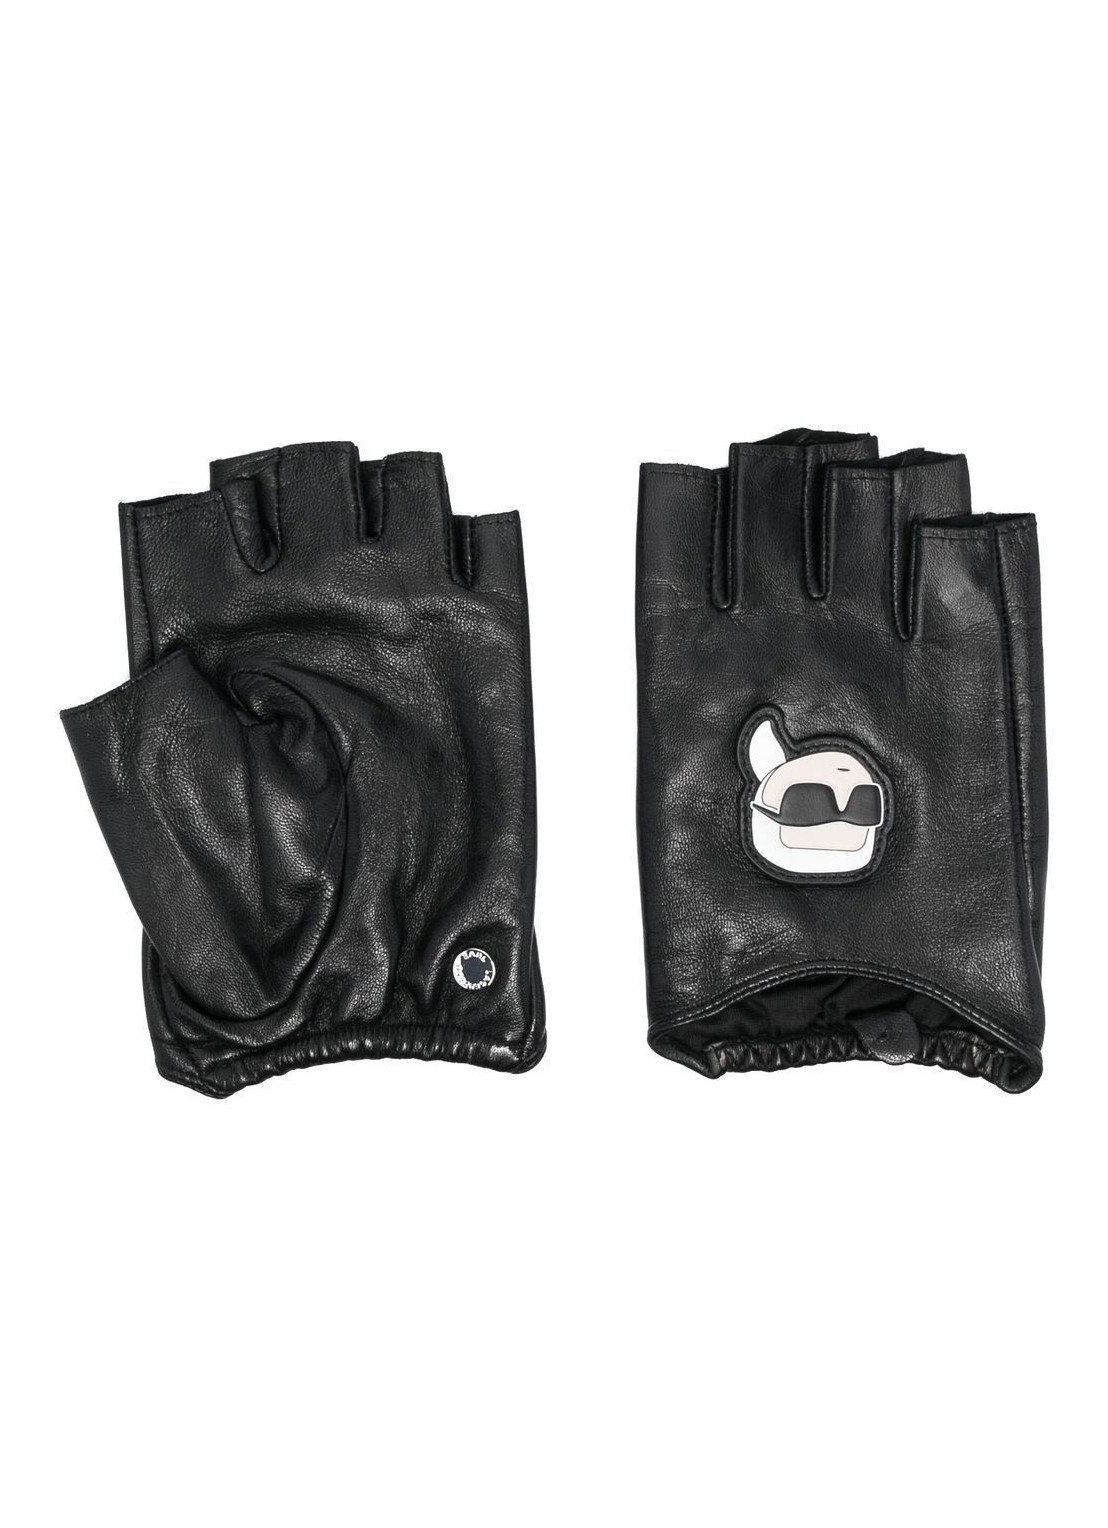 Guantes karl lagerfeld gloves woman k/ikonik 2.0 fingerless glove 230w3601 a999 talla M
 